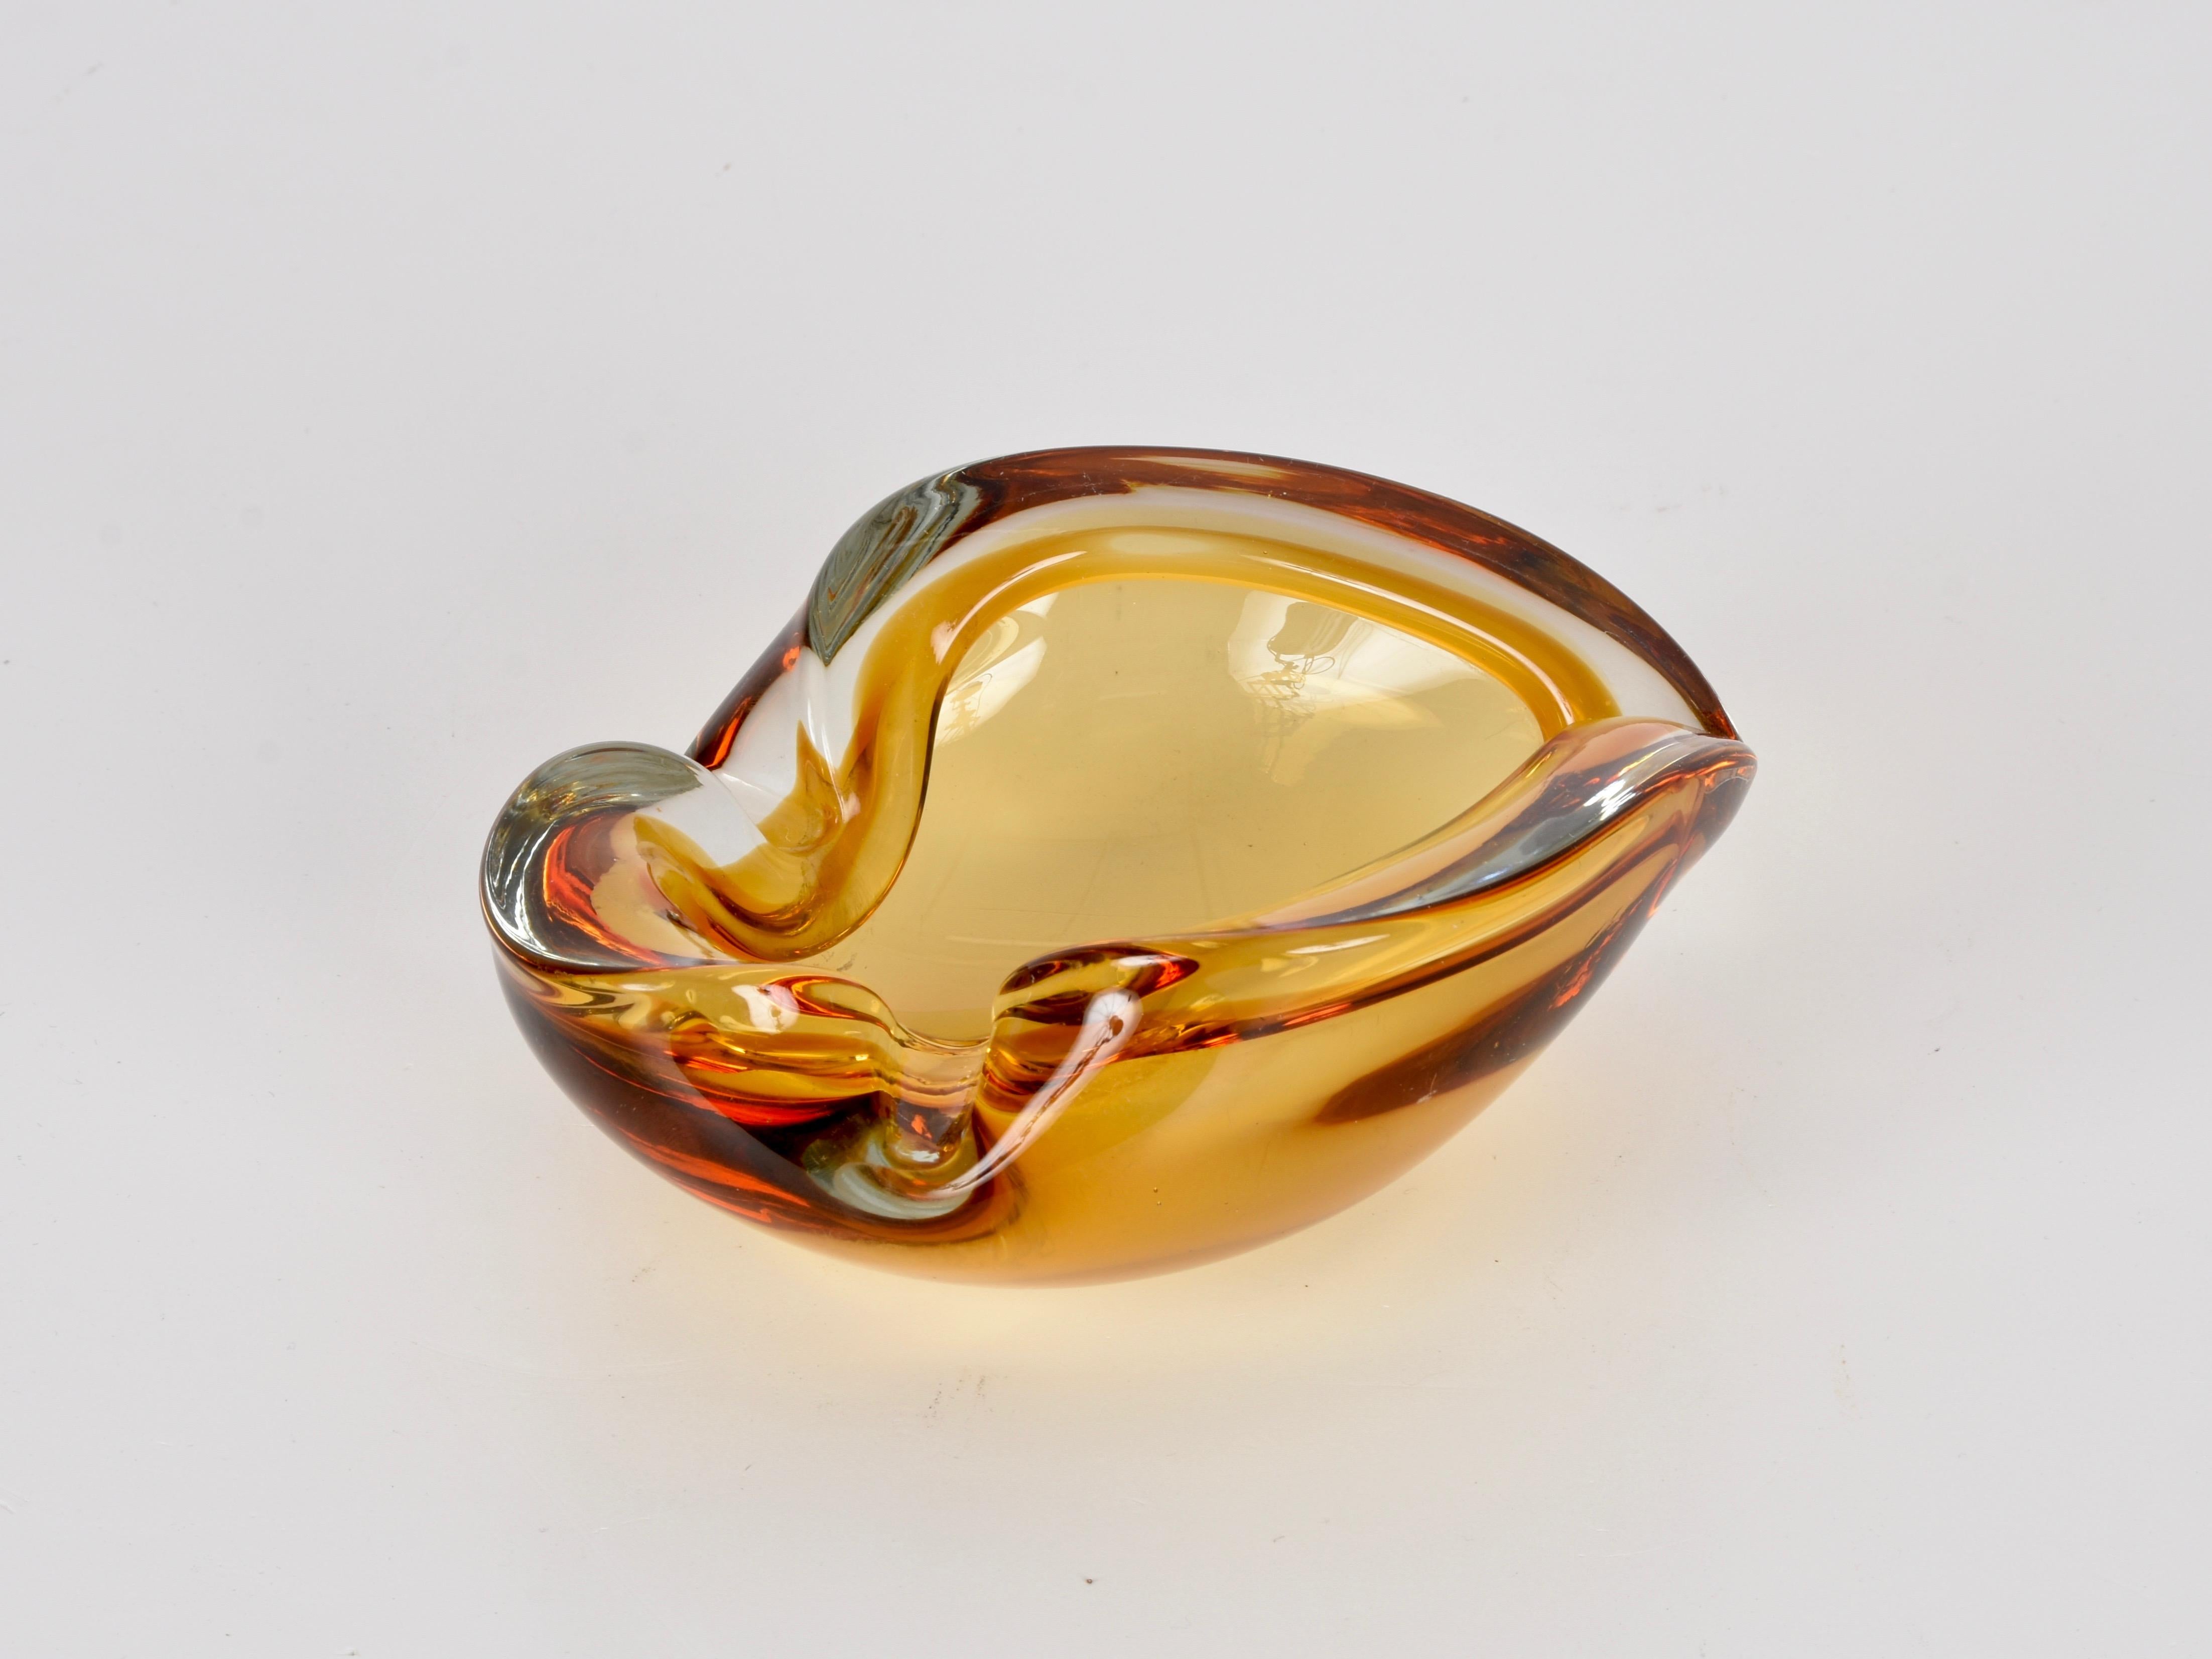 Magnifique verre d'art de Murano du milieu du siècle avec des nuances de couleurs étonnantes allant du rouge foncé à l'ambre, en passant par l'orange clair et le cristal. Cette pièce a été produite en Italie dans les années 1960.

Cette